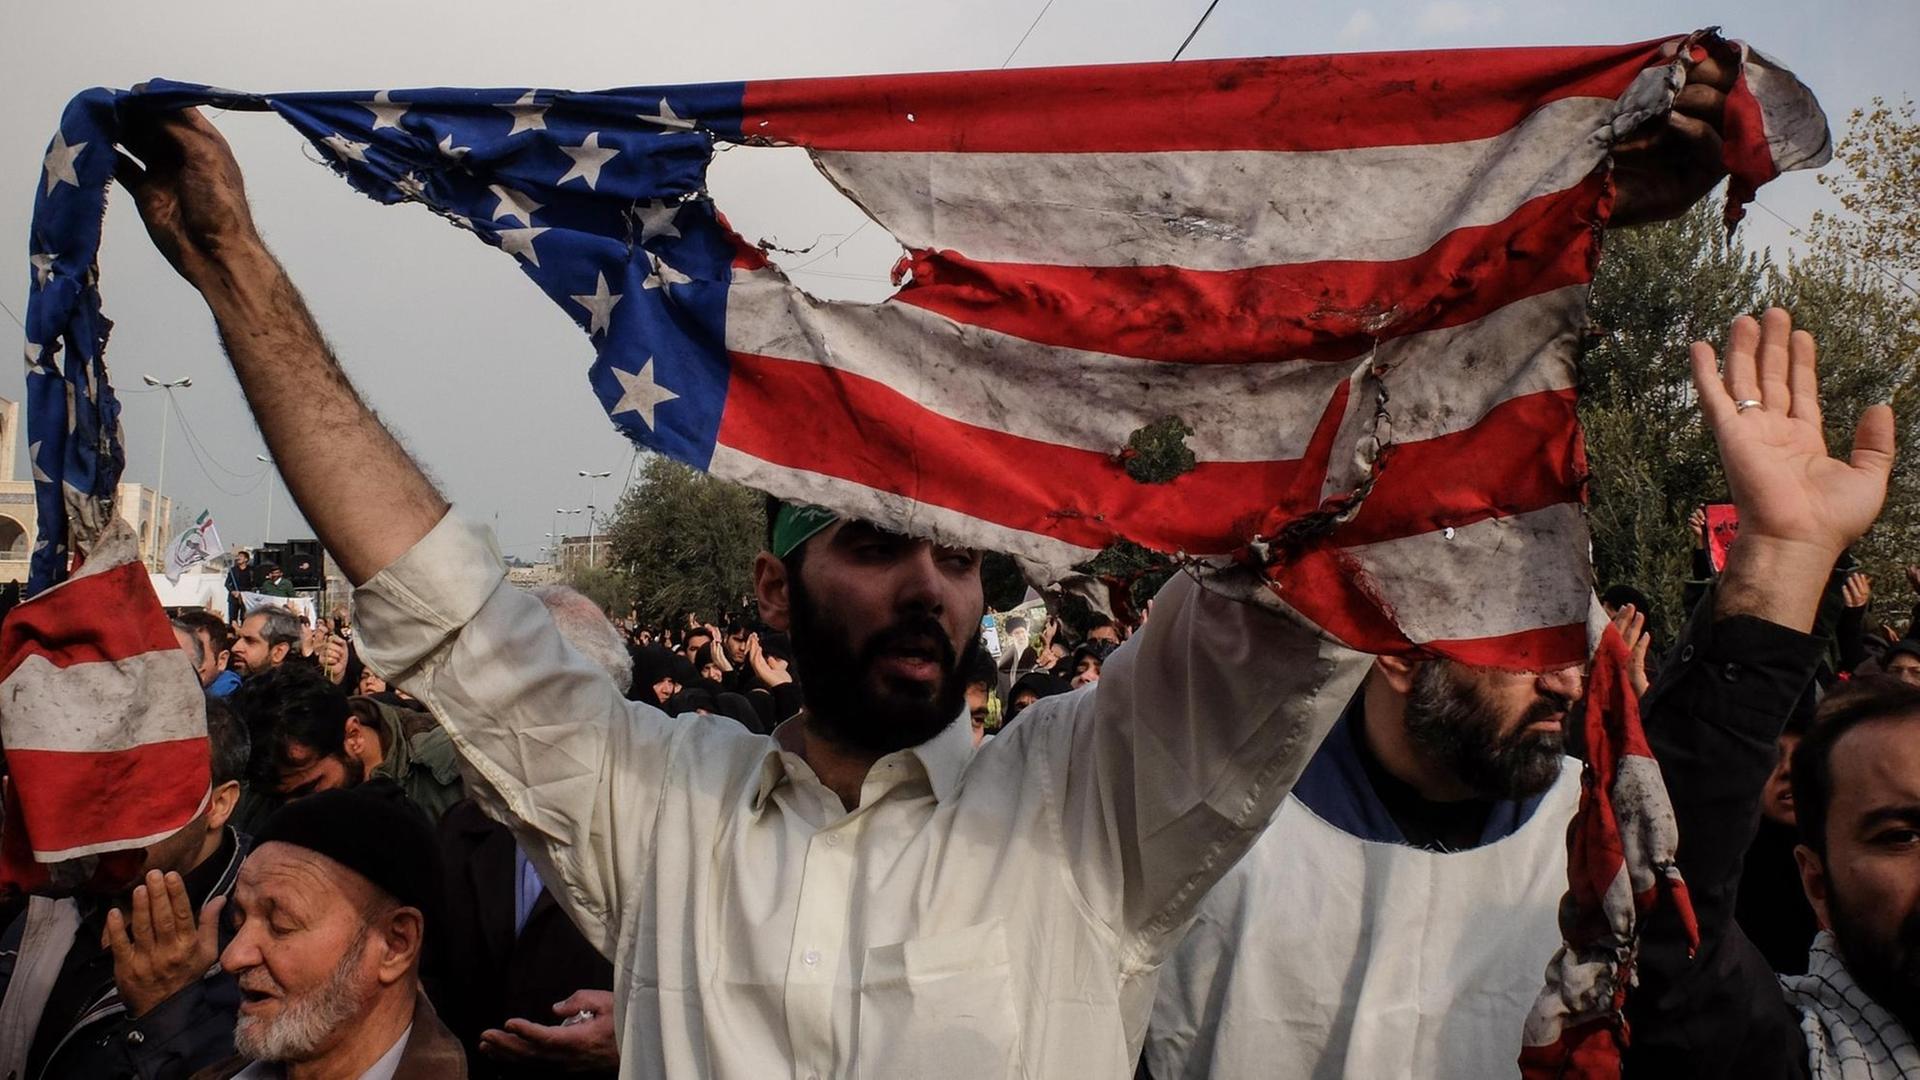 Während einer Anti-USA-Demonstration im Iran hält ein Teilnehmer eine zerrissene US-Flagge hoch.